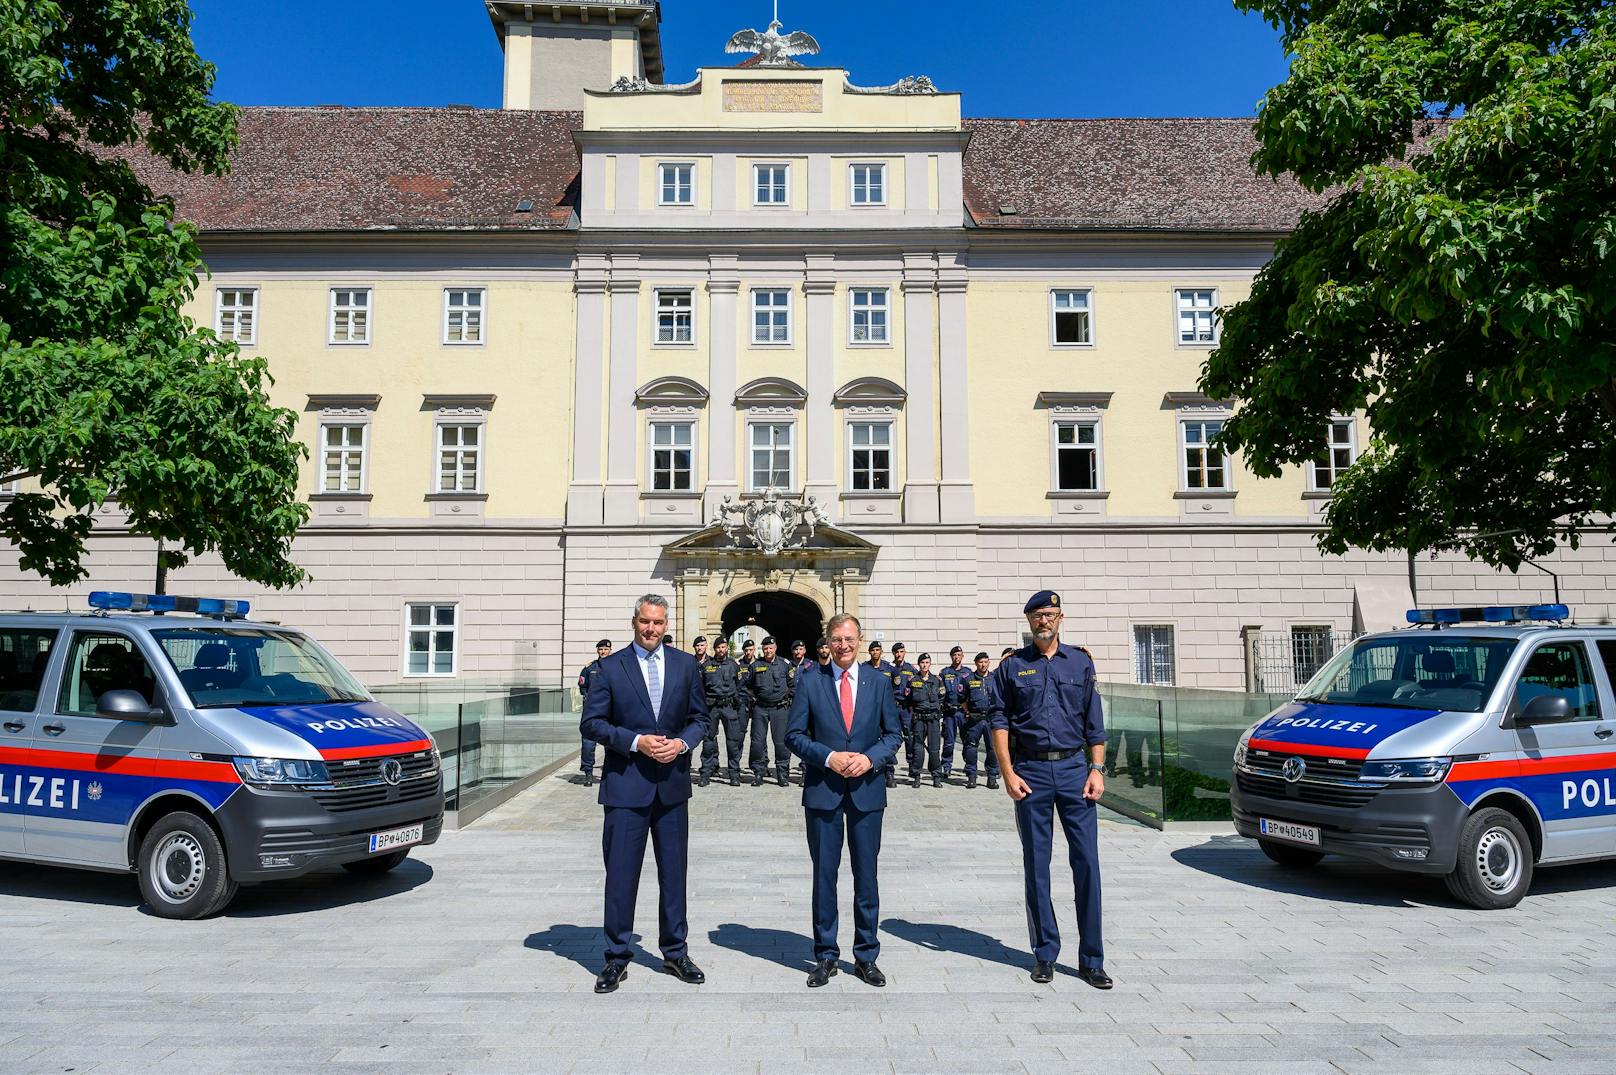 OÖ bekommt eine neue Polizeieinheit. Minister Nehammer, LH Stelzer und Polizei-Chef Pilsl (v.l.n.r.) stellten sie in Linz vor.